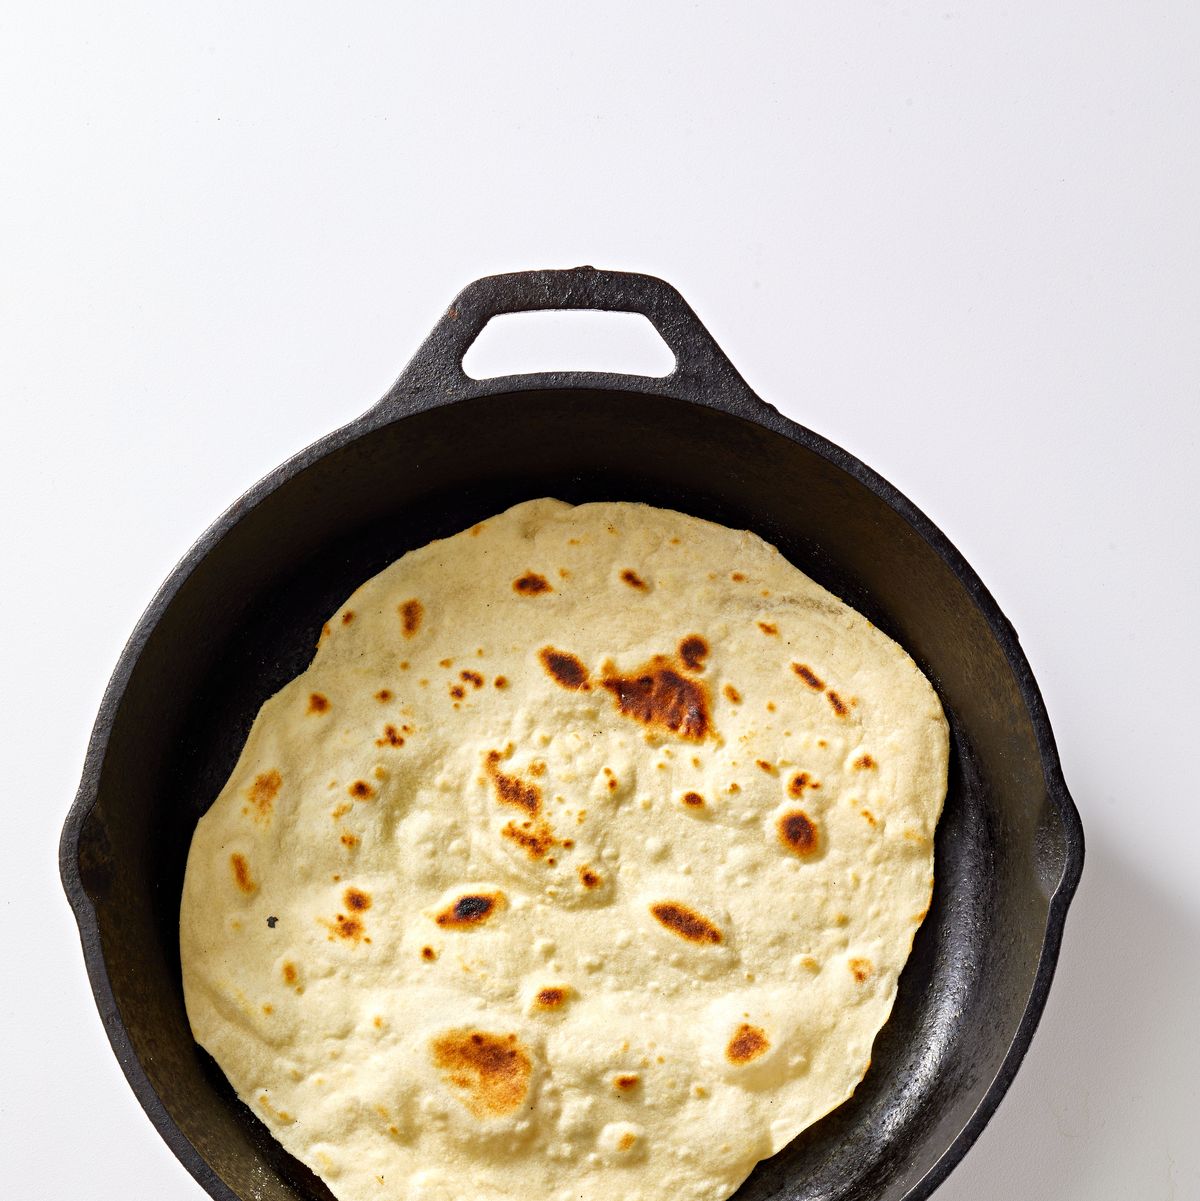 https://hips.hearstapps.com/hmg-prod/images/homemade-flour-tortillas-64343308e2f52.jpg?crop=0.958xw:0.639xh;0,0.125xh&resize=1200:*